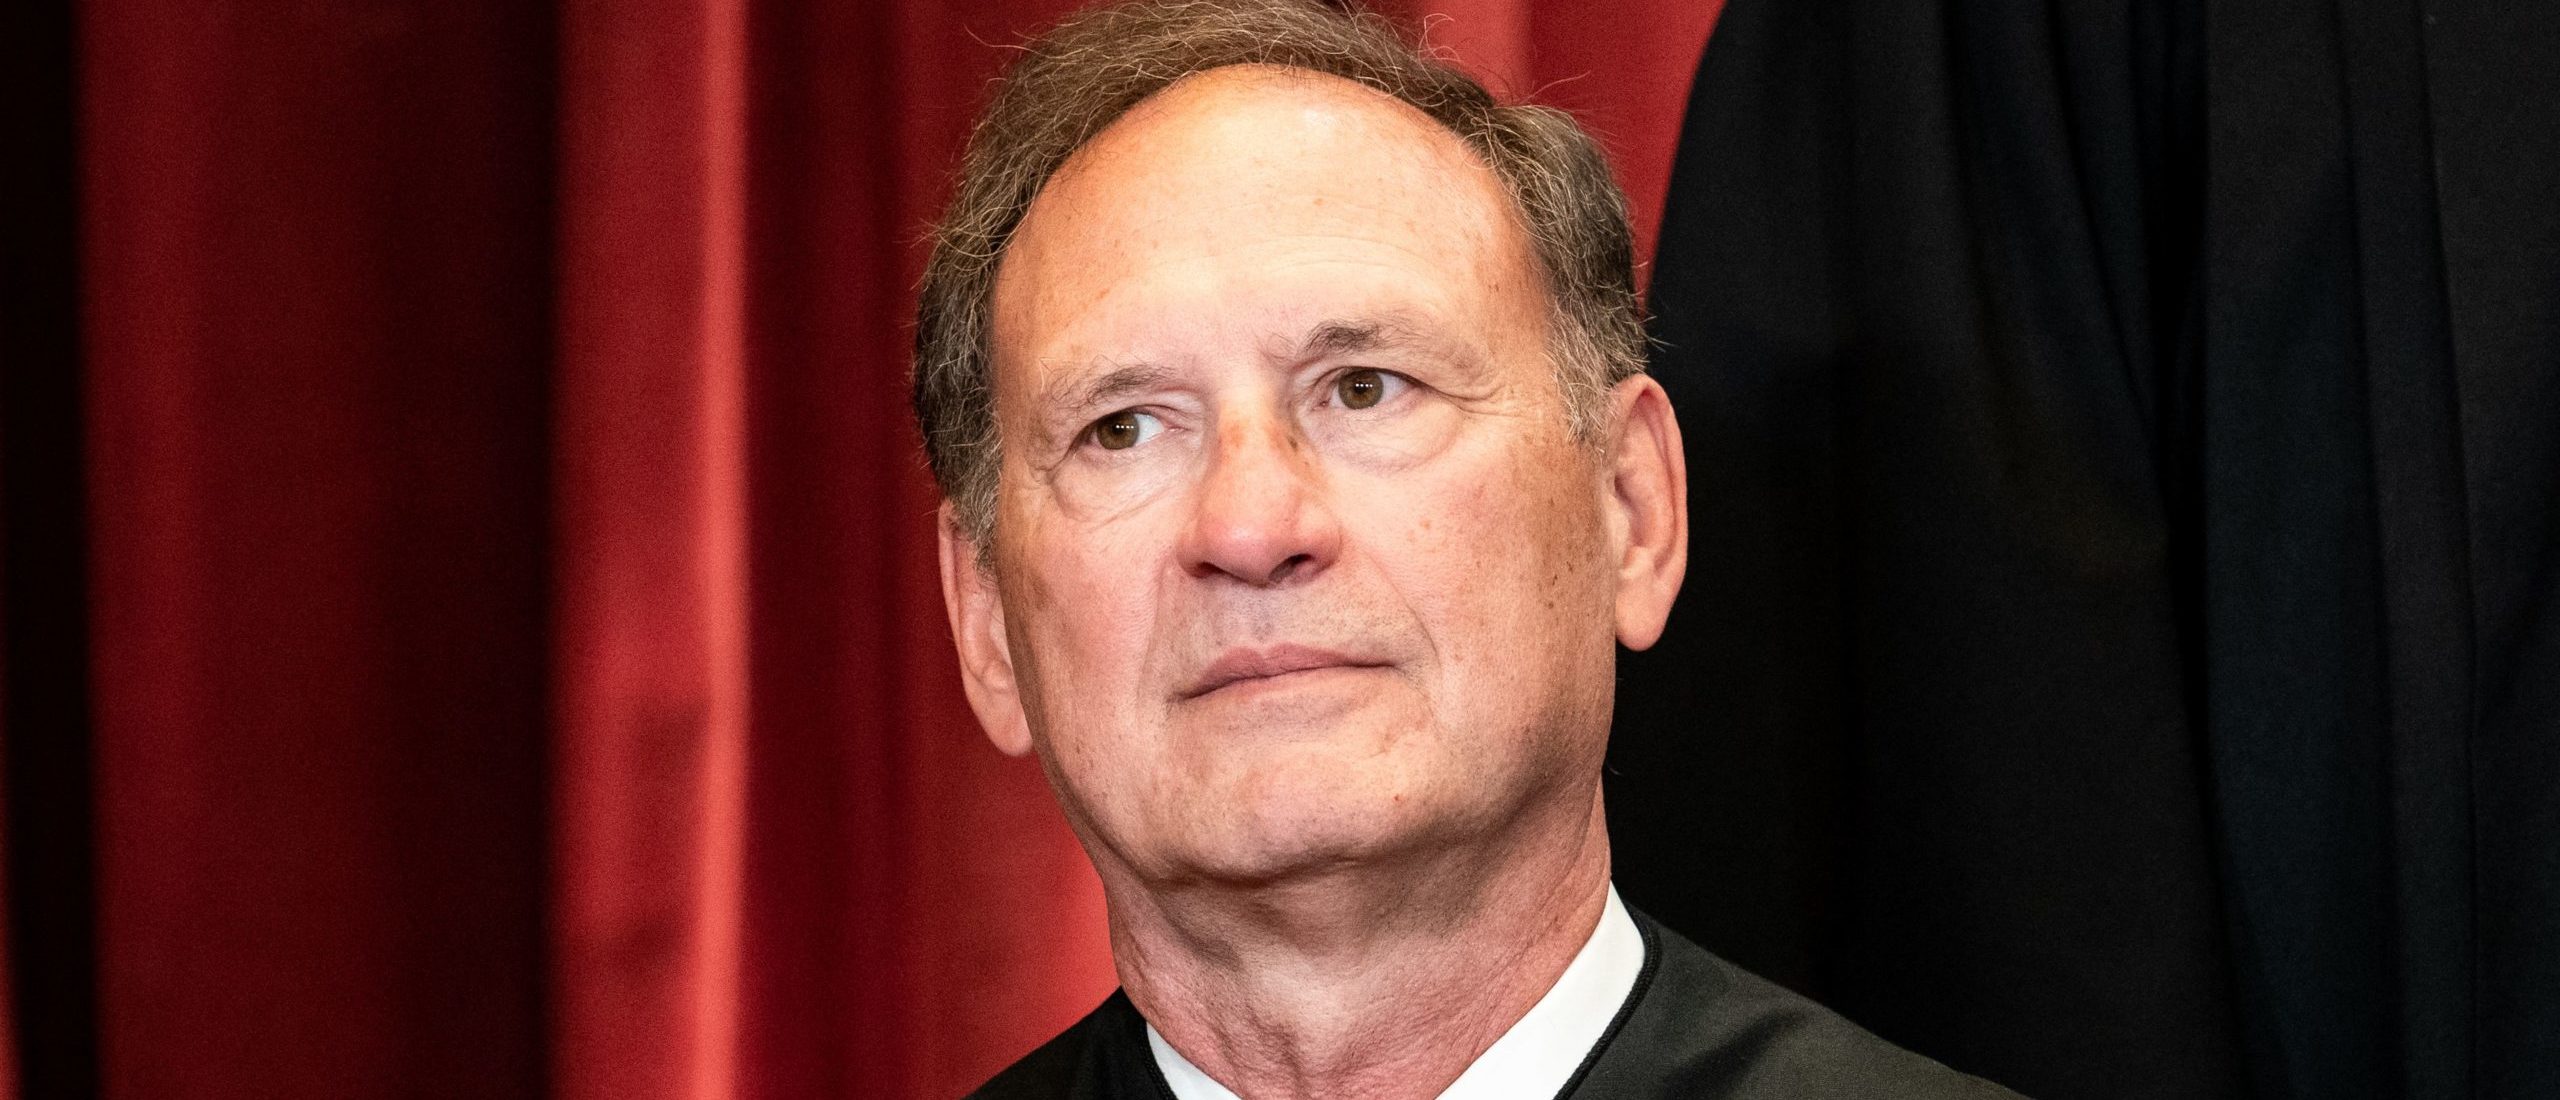 Associate Justice Samuel Alito